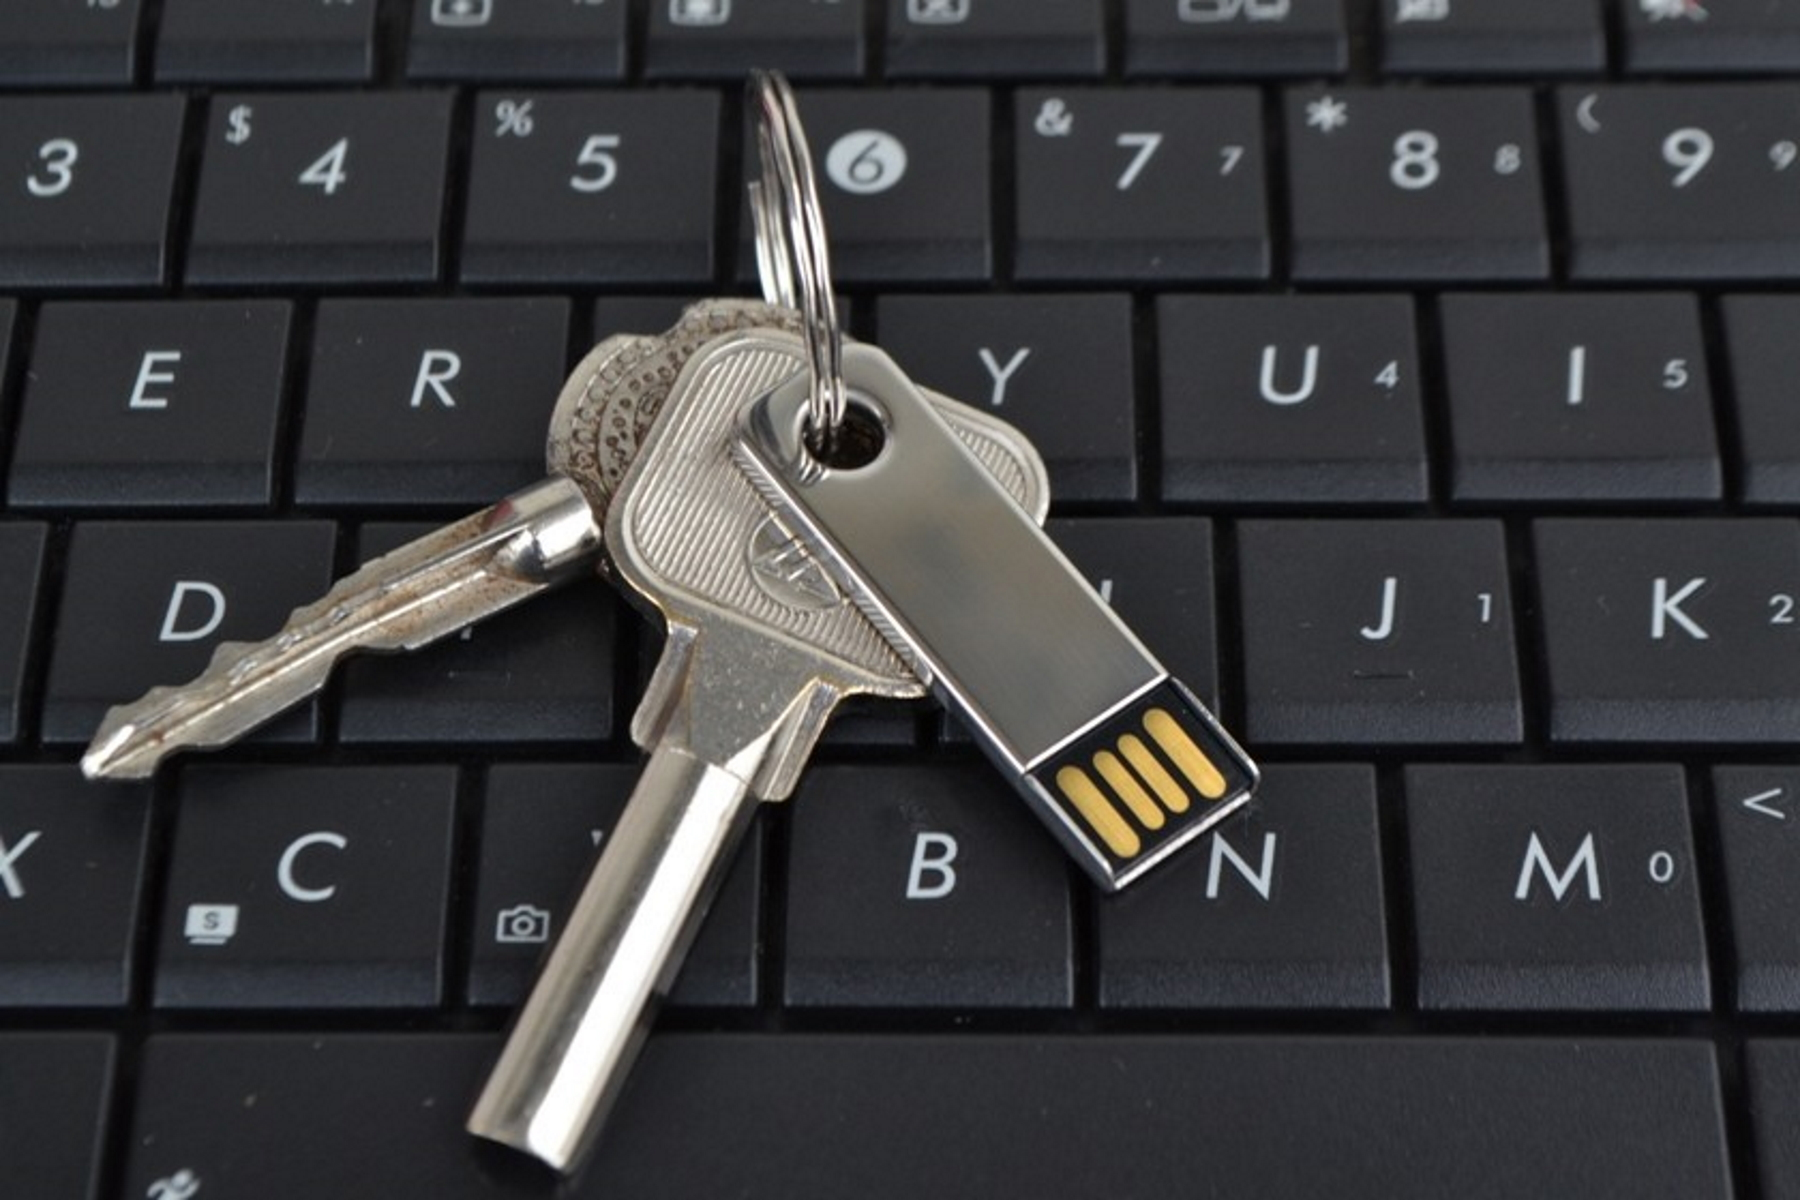 USB GERMANY ®Mini (Silber, USB-Stick 64 GB) Key